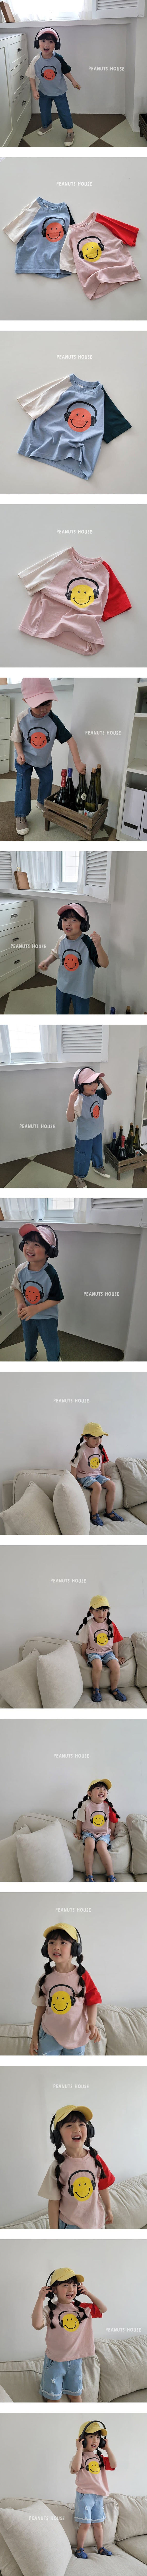 Peanuts - Korean Children Fashion - #childrensboutique - Headset Tee